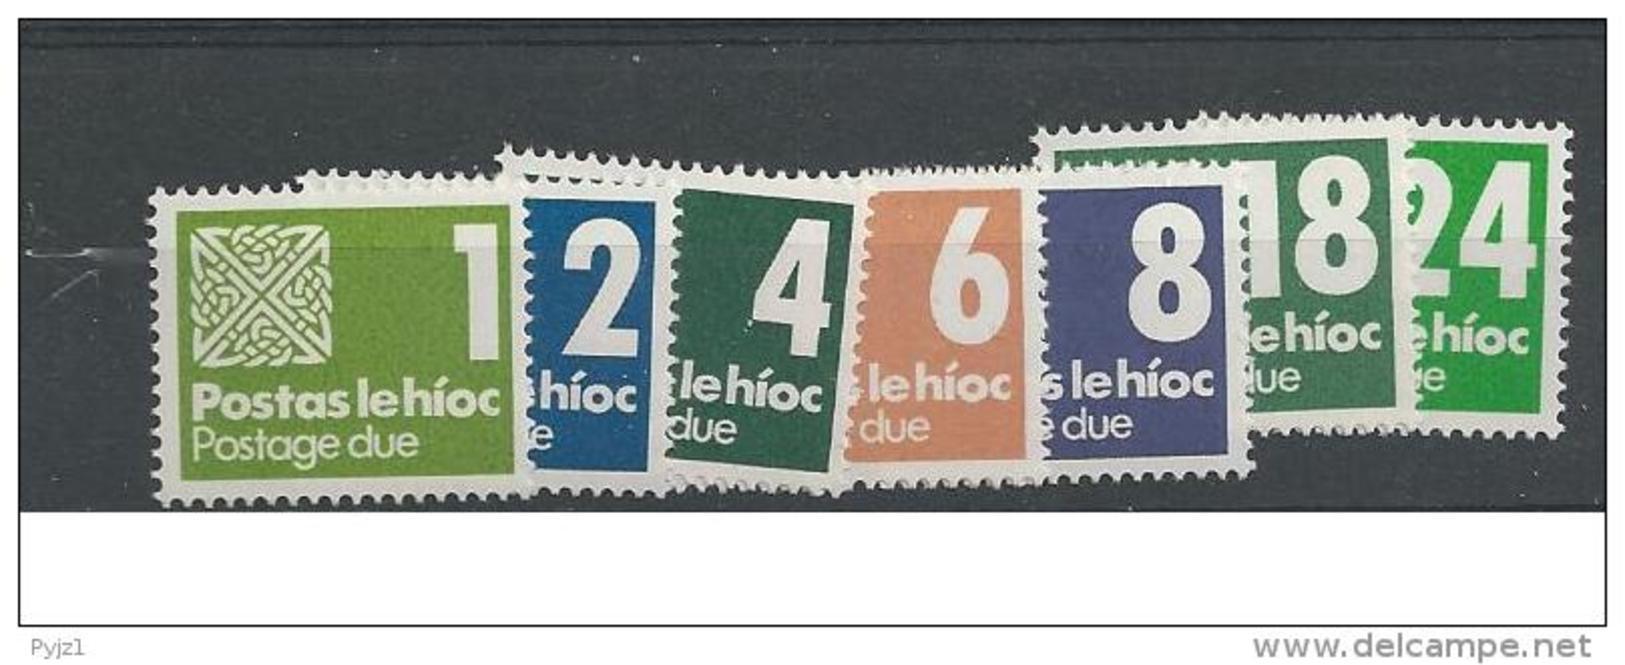 1980 MNH Ireland, Eire, Irland, Ierland, Porto, Postfris - Impuestos